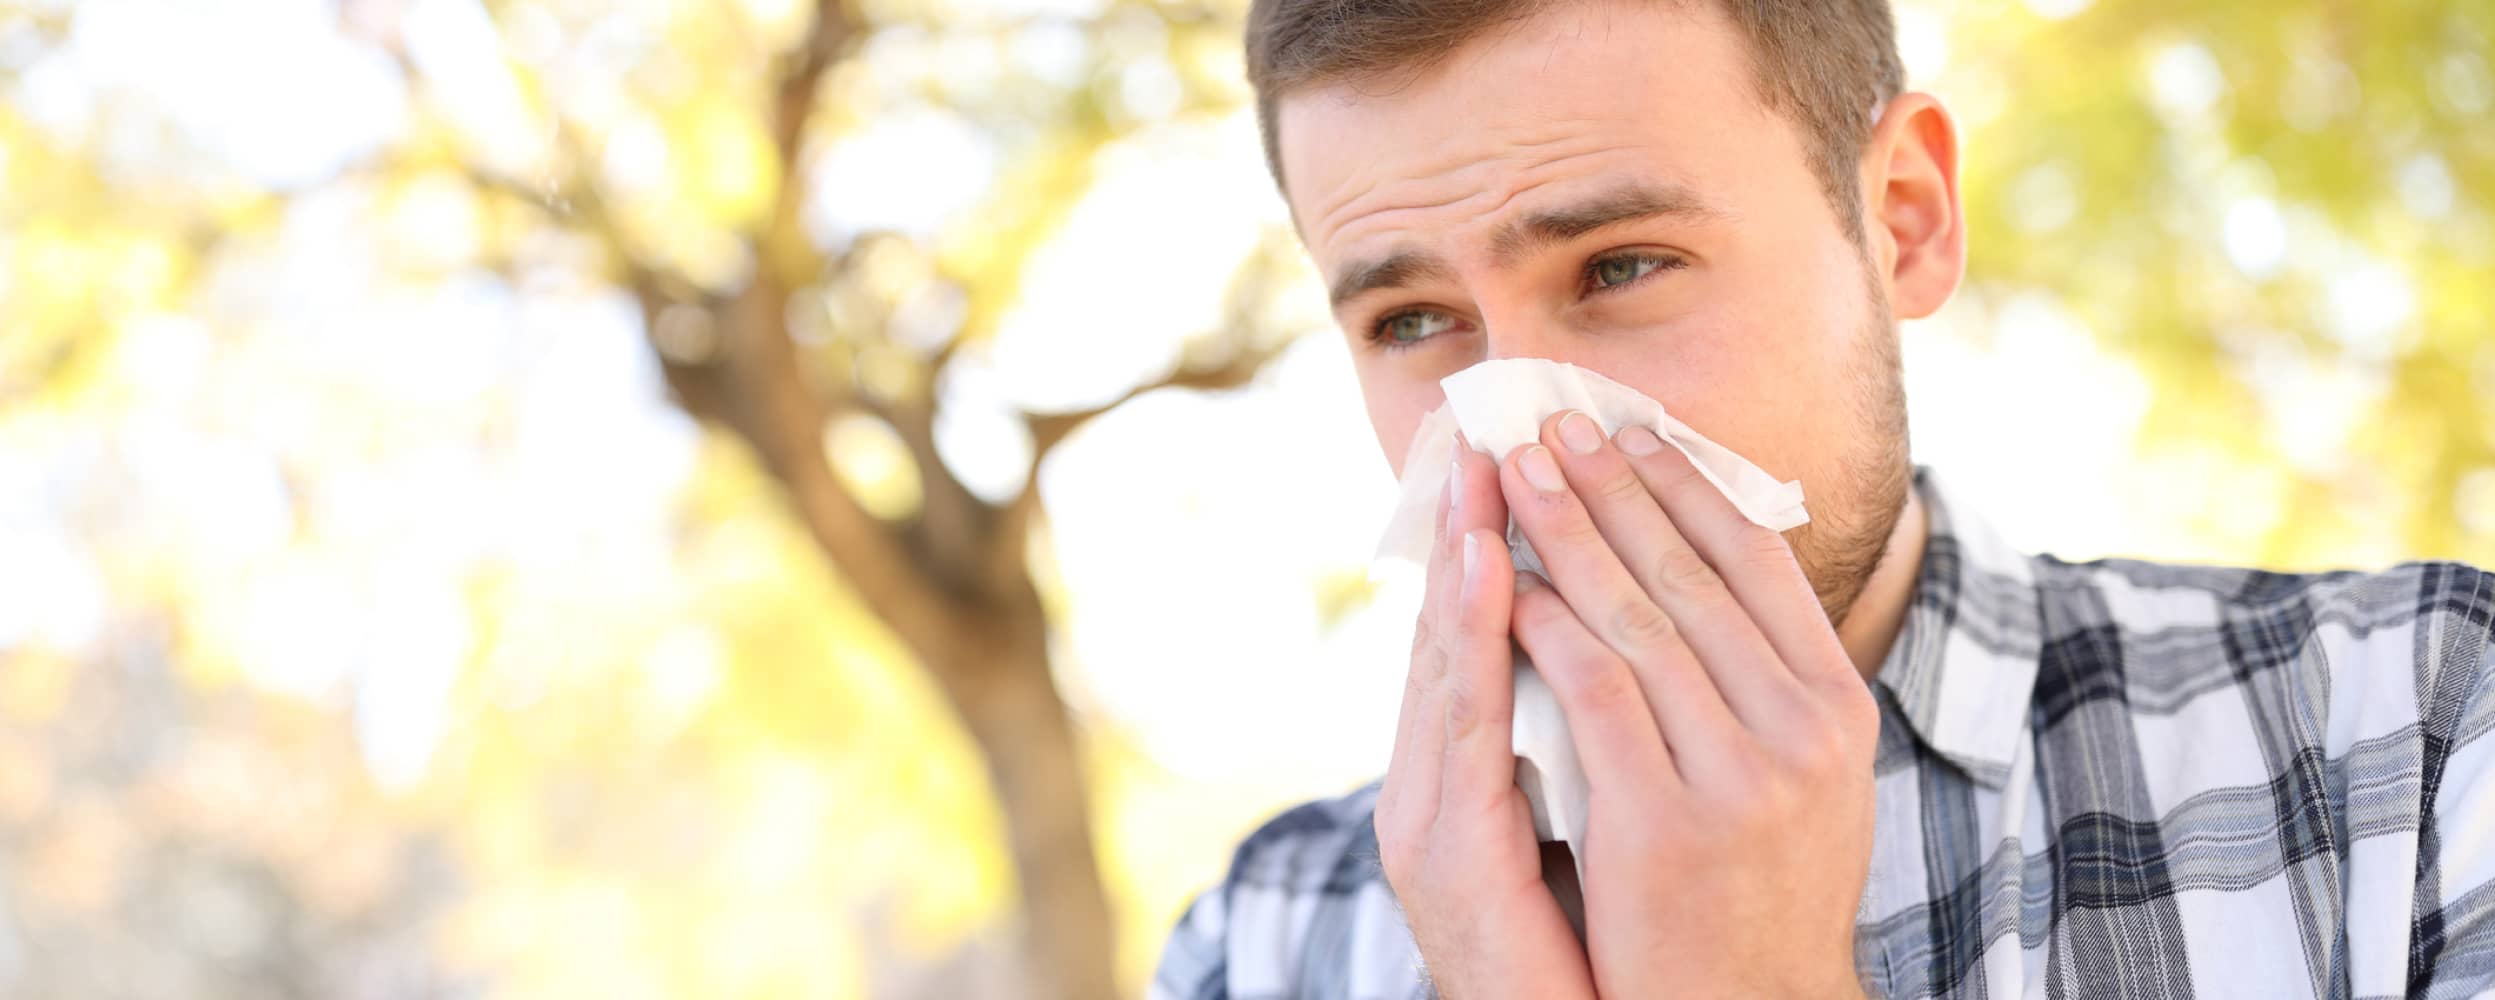 Alergias por cambio de clima: ¿cómo tratarlas?